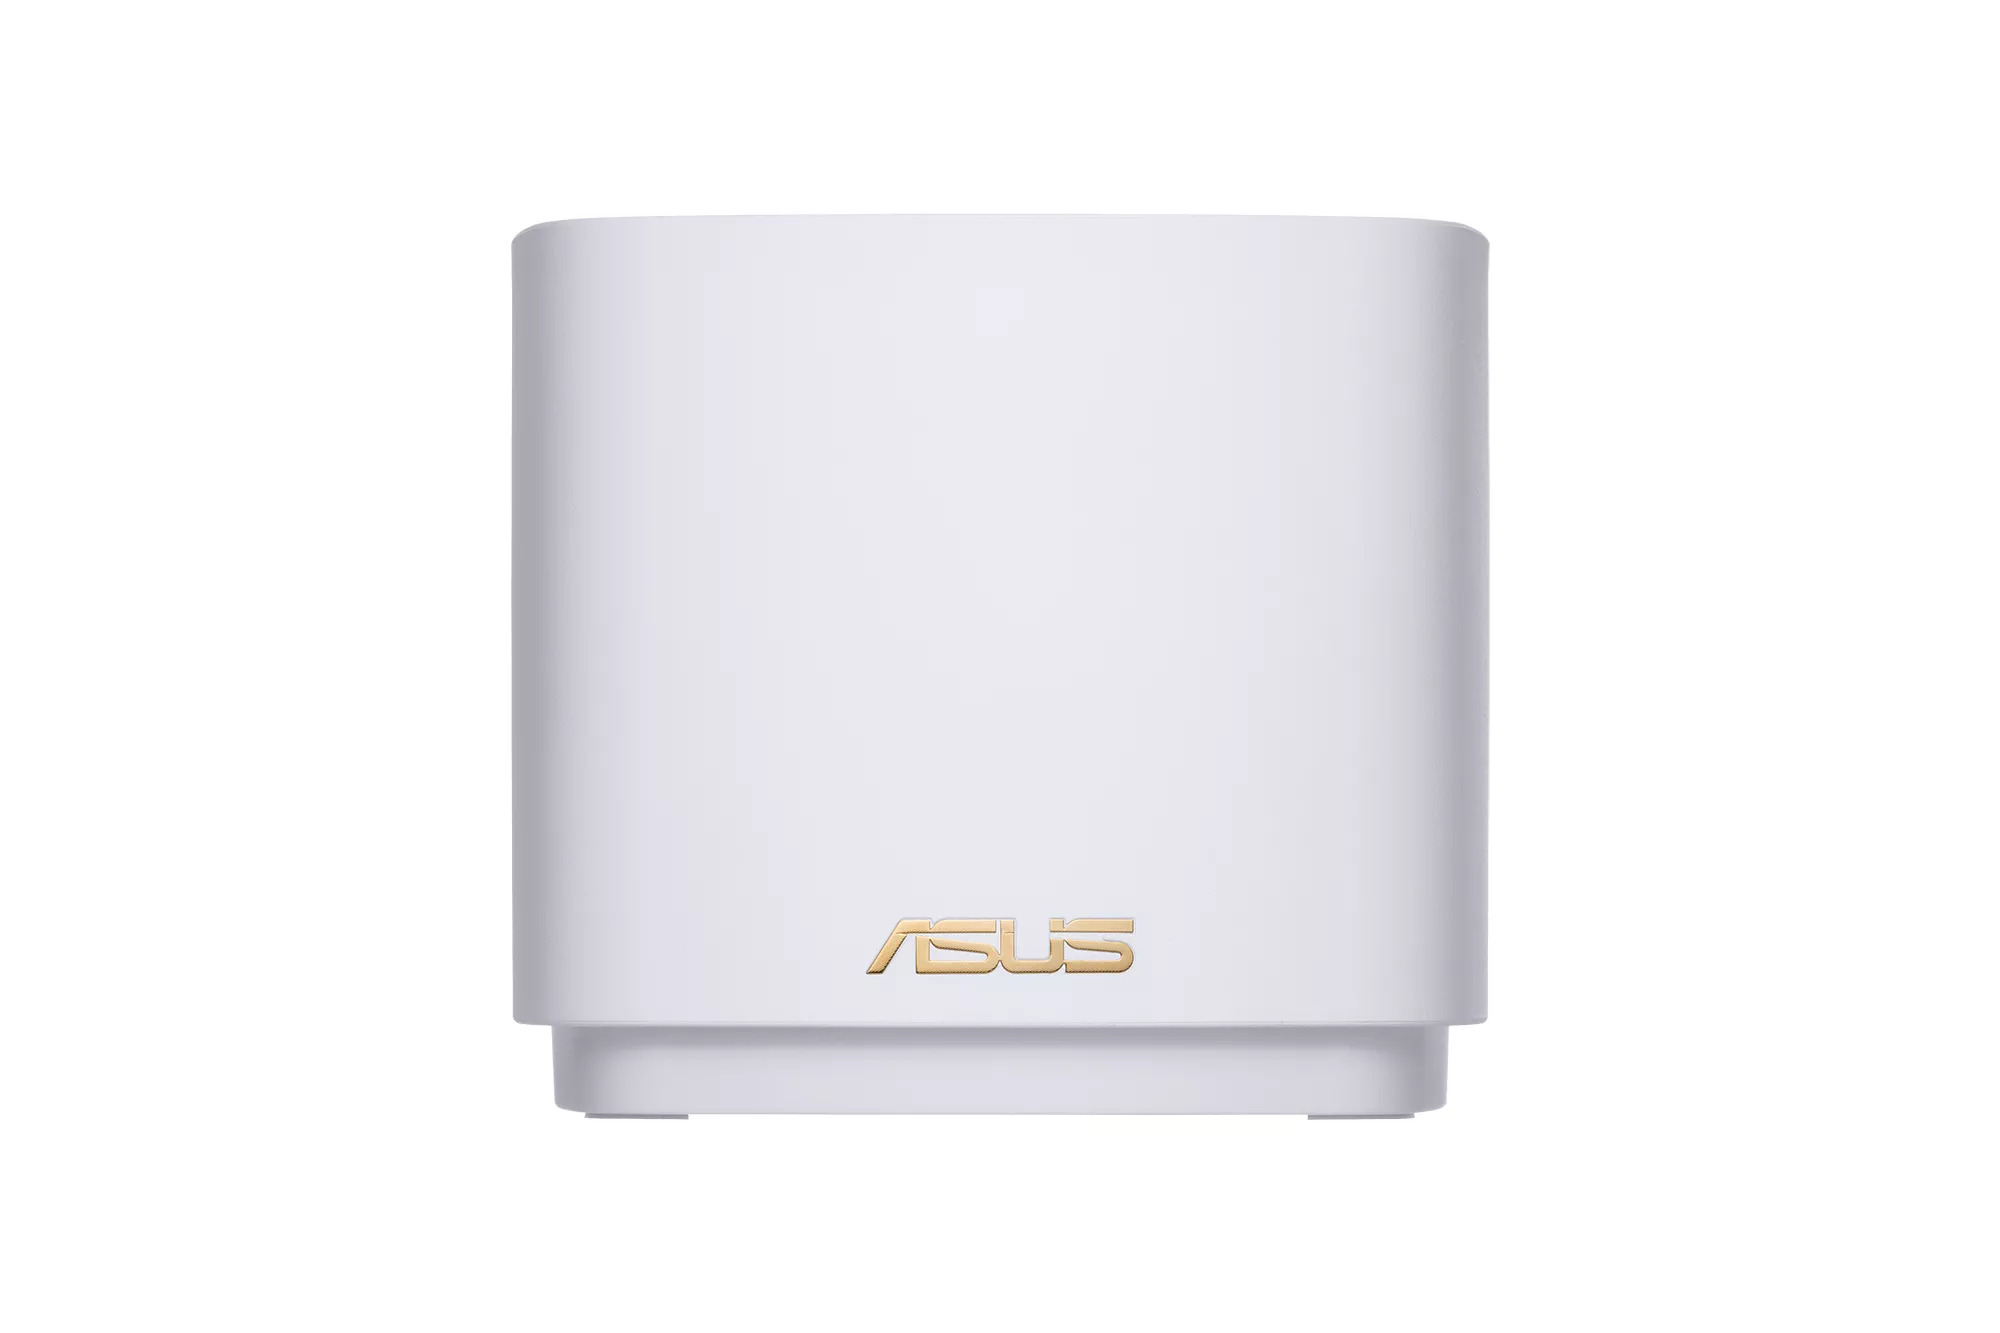 Achat ASUS ZenWiFi XD4 Dual-Band WiFi AX1800 AiMesh WiFi et autres produits de la marque ASUS